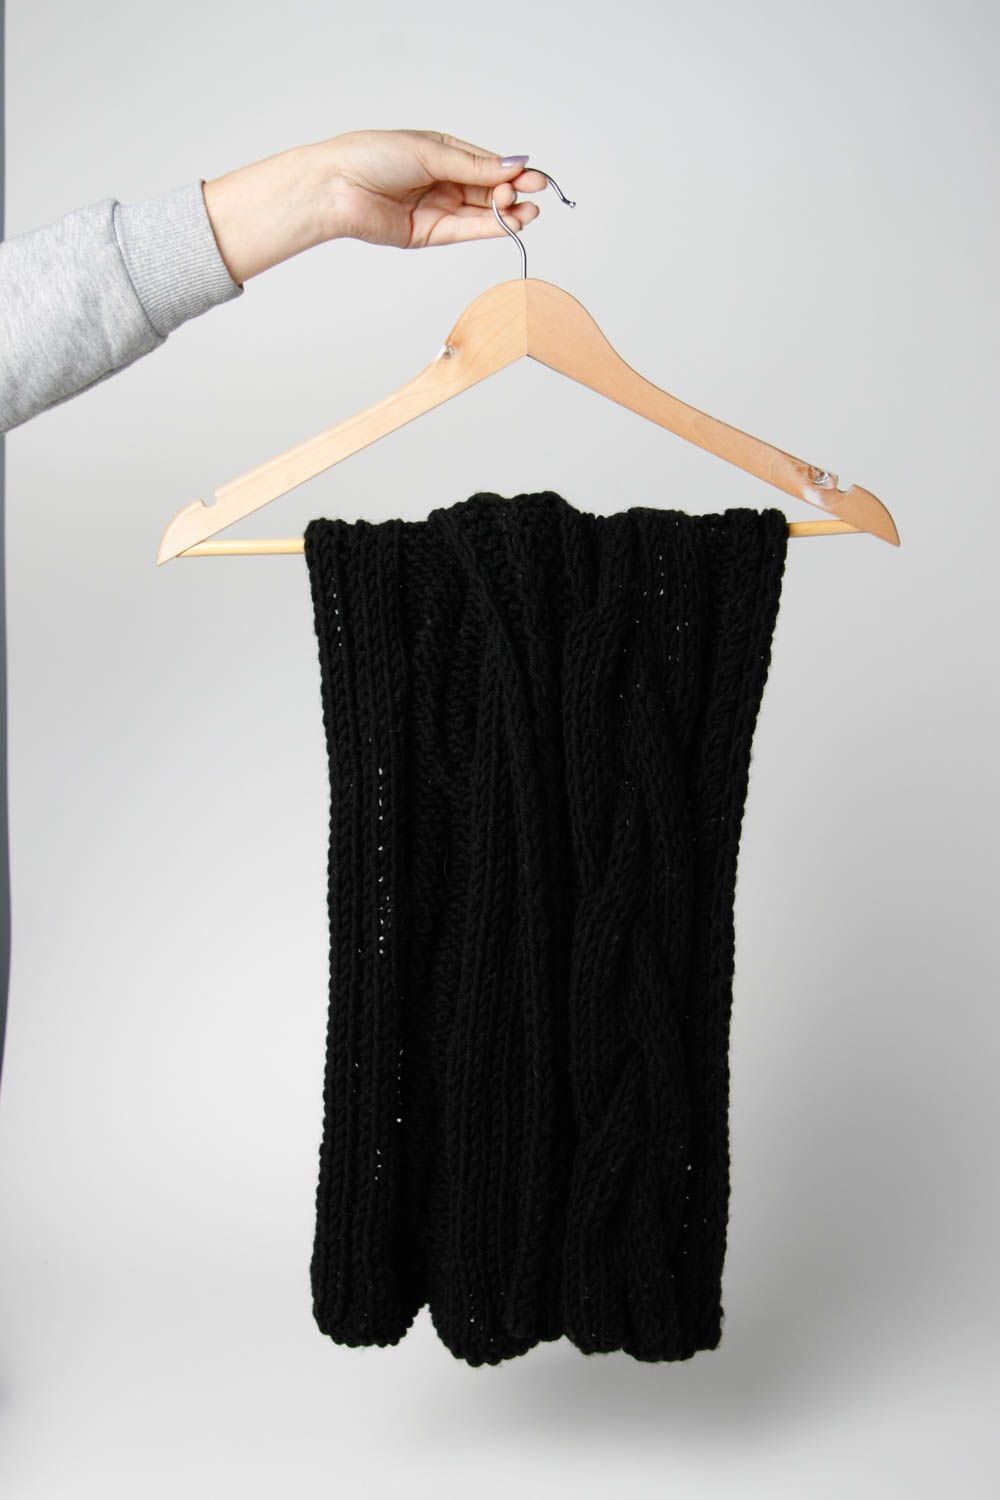 Шарф ручной работы шарф на шею черный теплый женский шарф из полушерсти фото 3